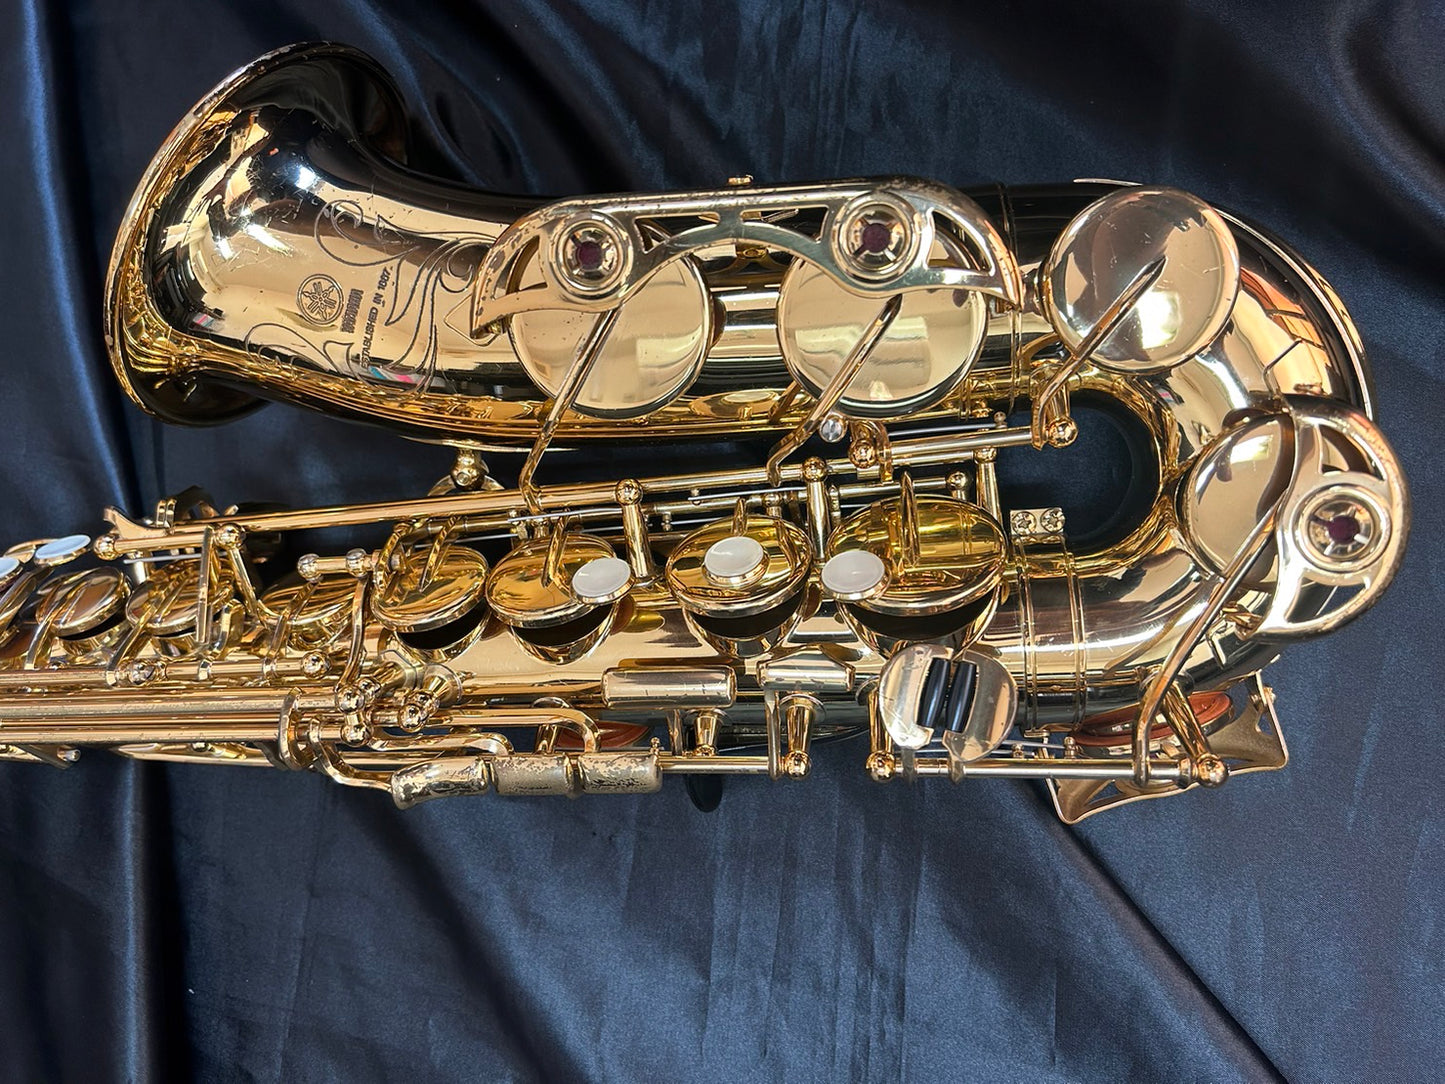 レンタル楽器 ヤマハ アルトサックス YAS-475  特価品